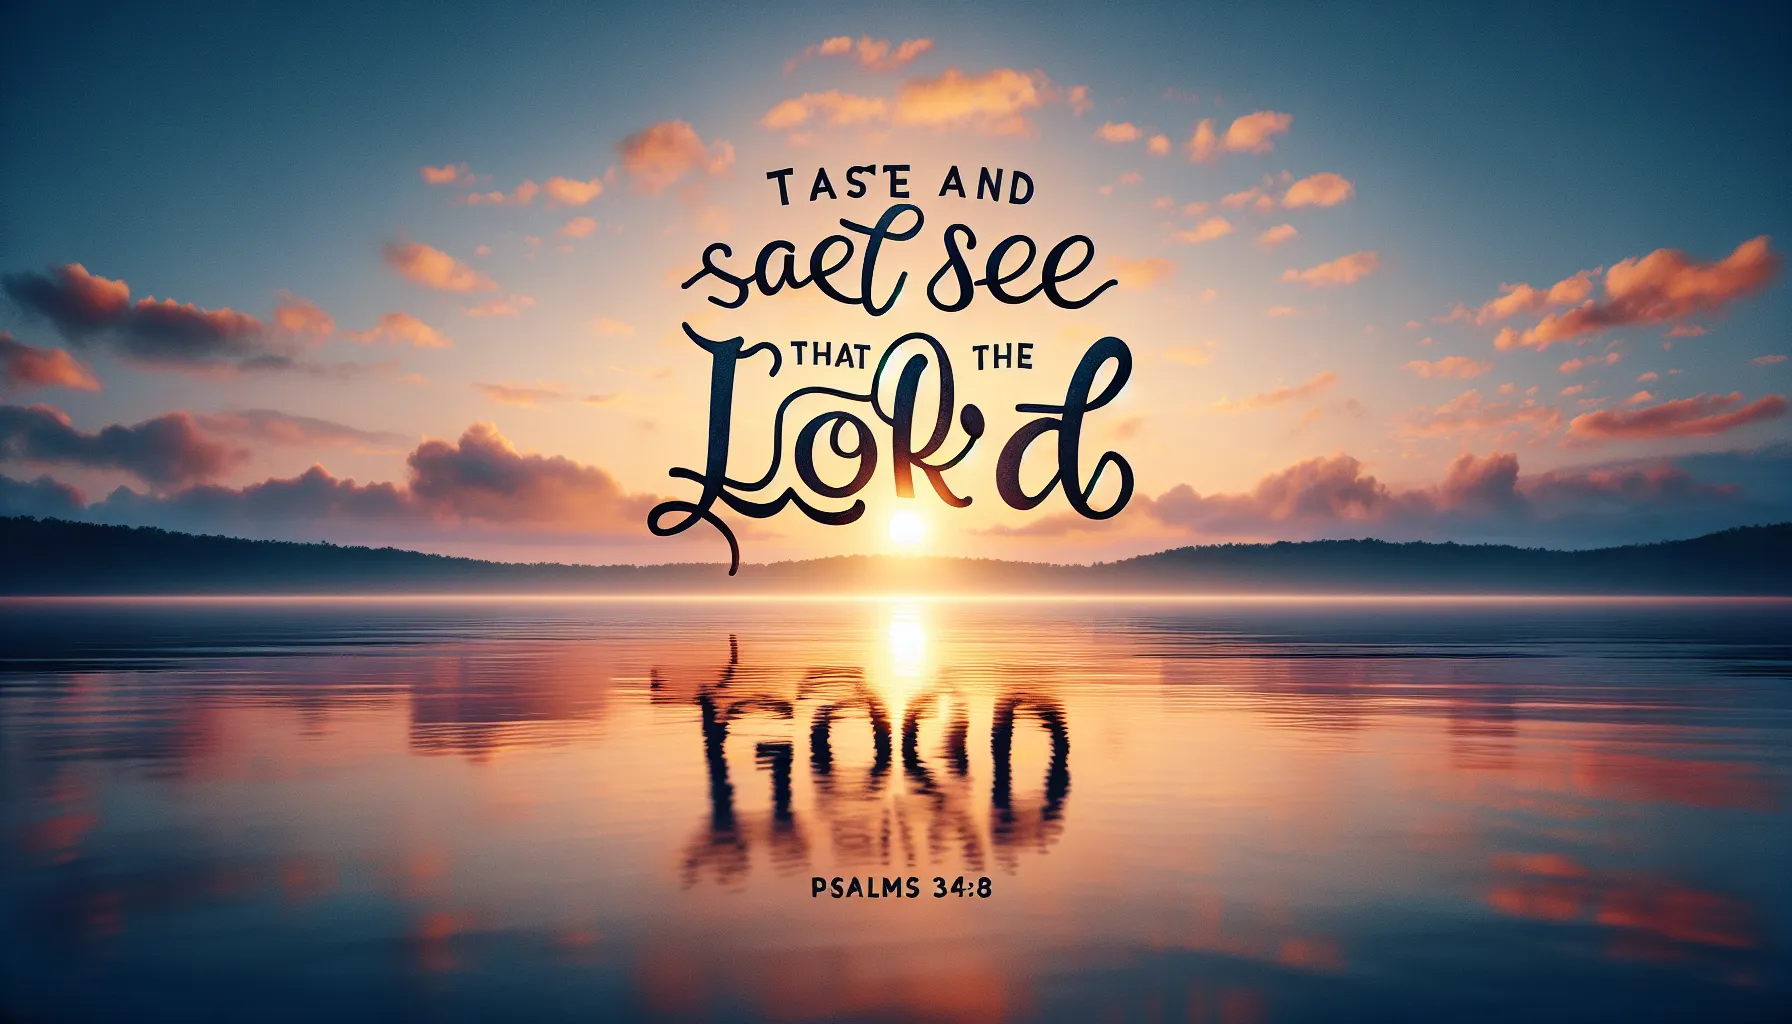 Imagen del Salmo 34:8 con la frase 'Gustad y ved que el Señor es bueno' sobre un fondo inspirador.